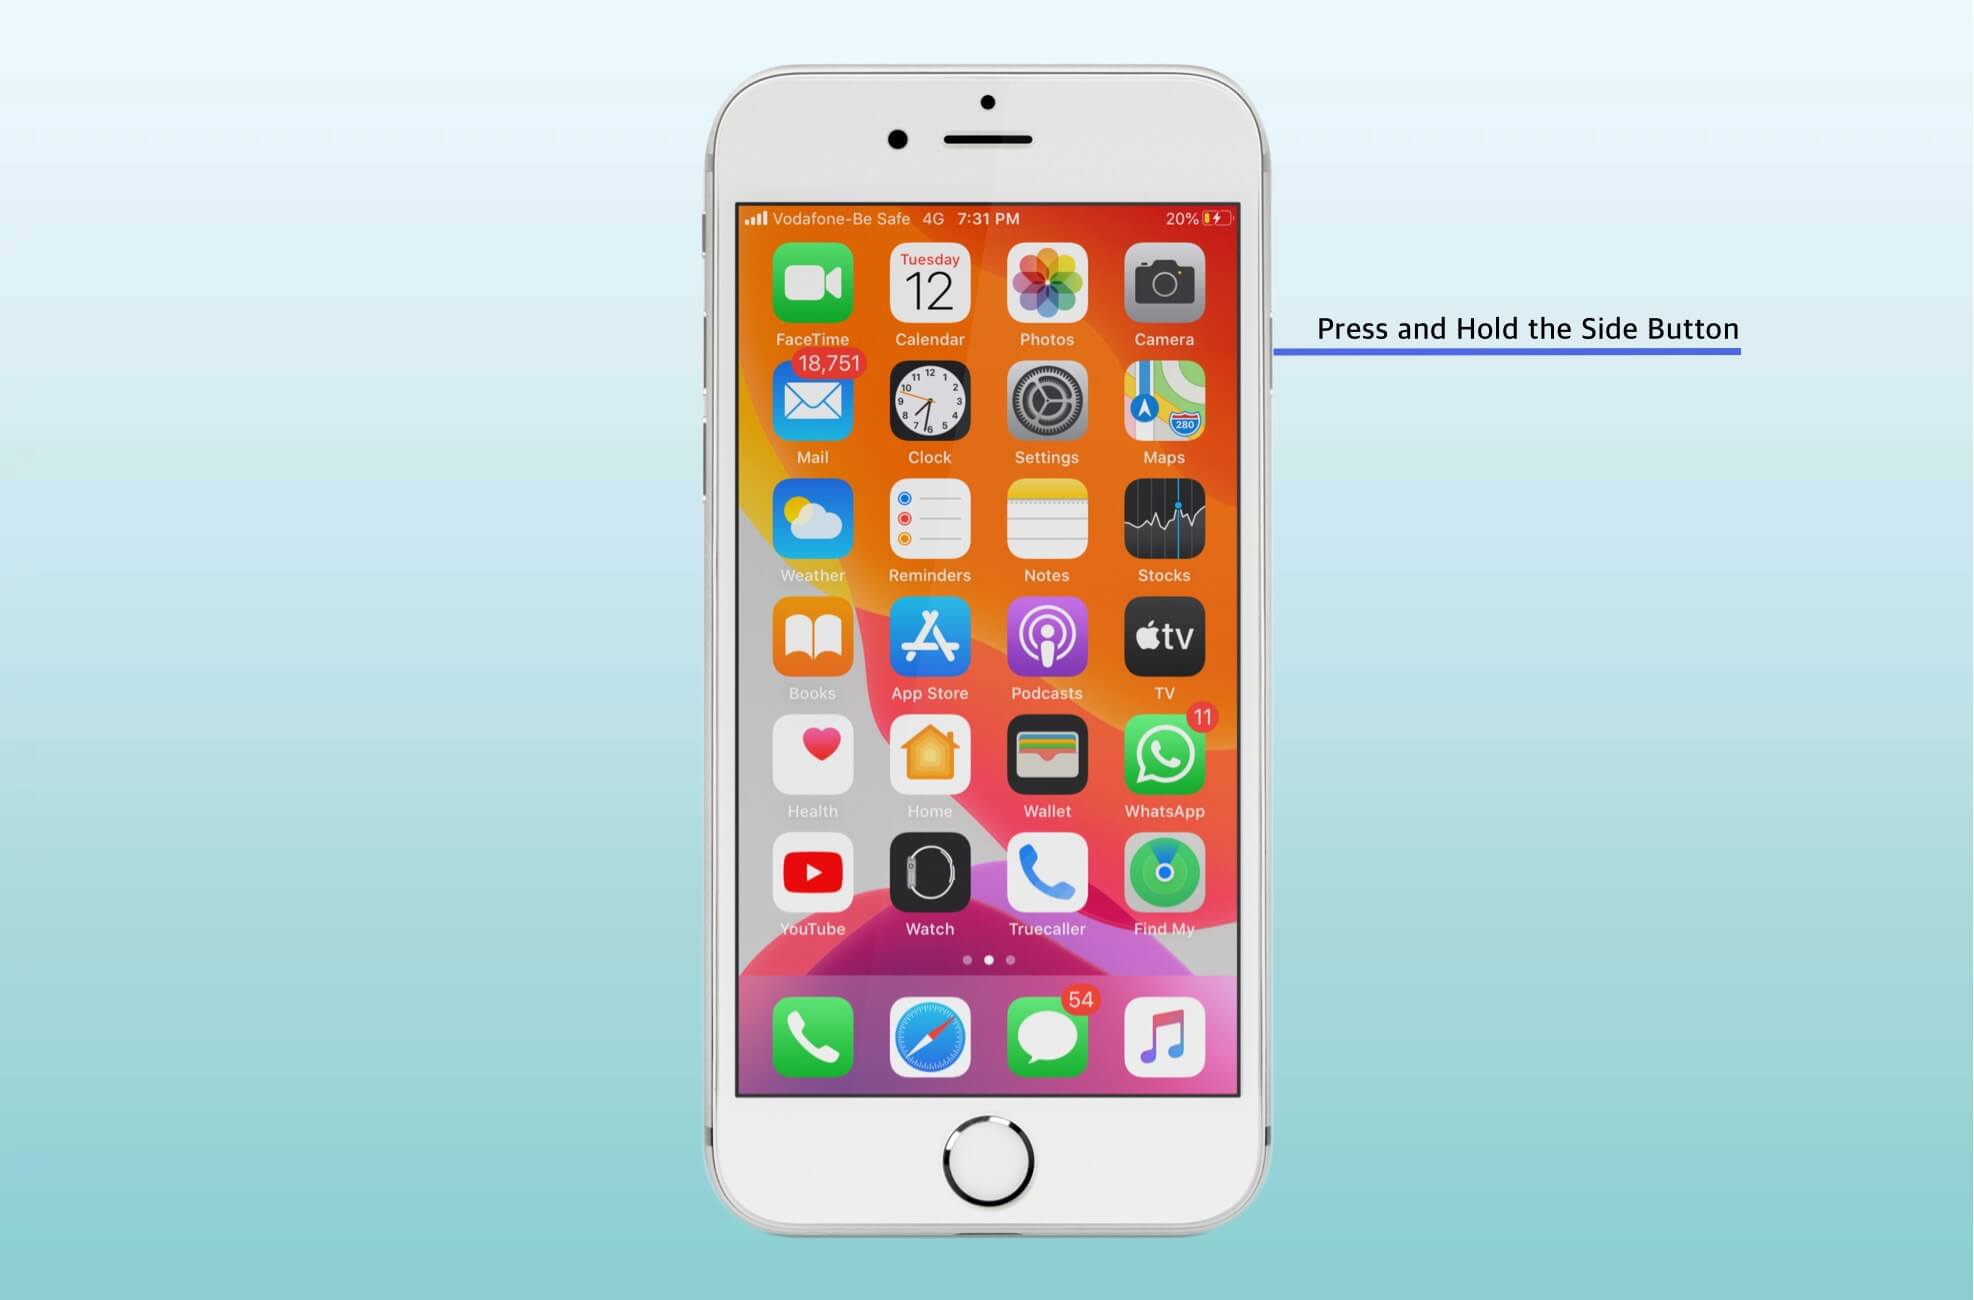 Mantenga presionado el botón lateral en el iPhone 6s